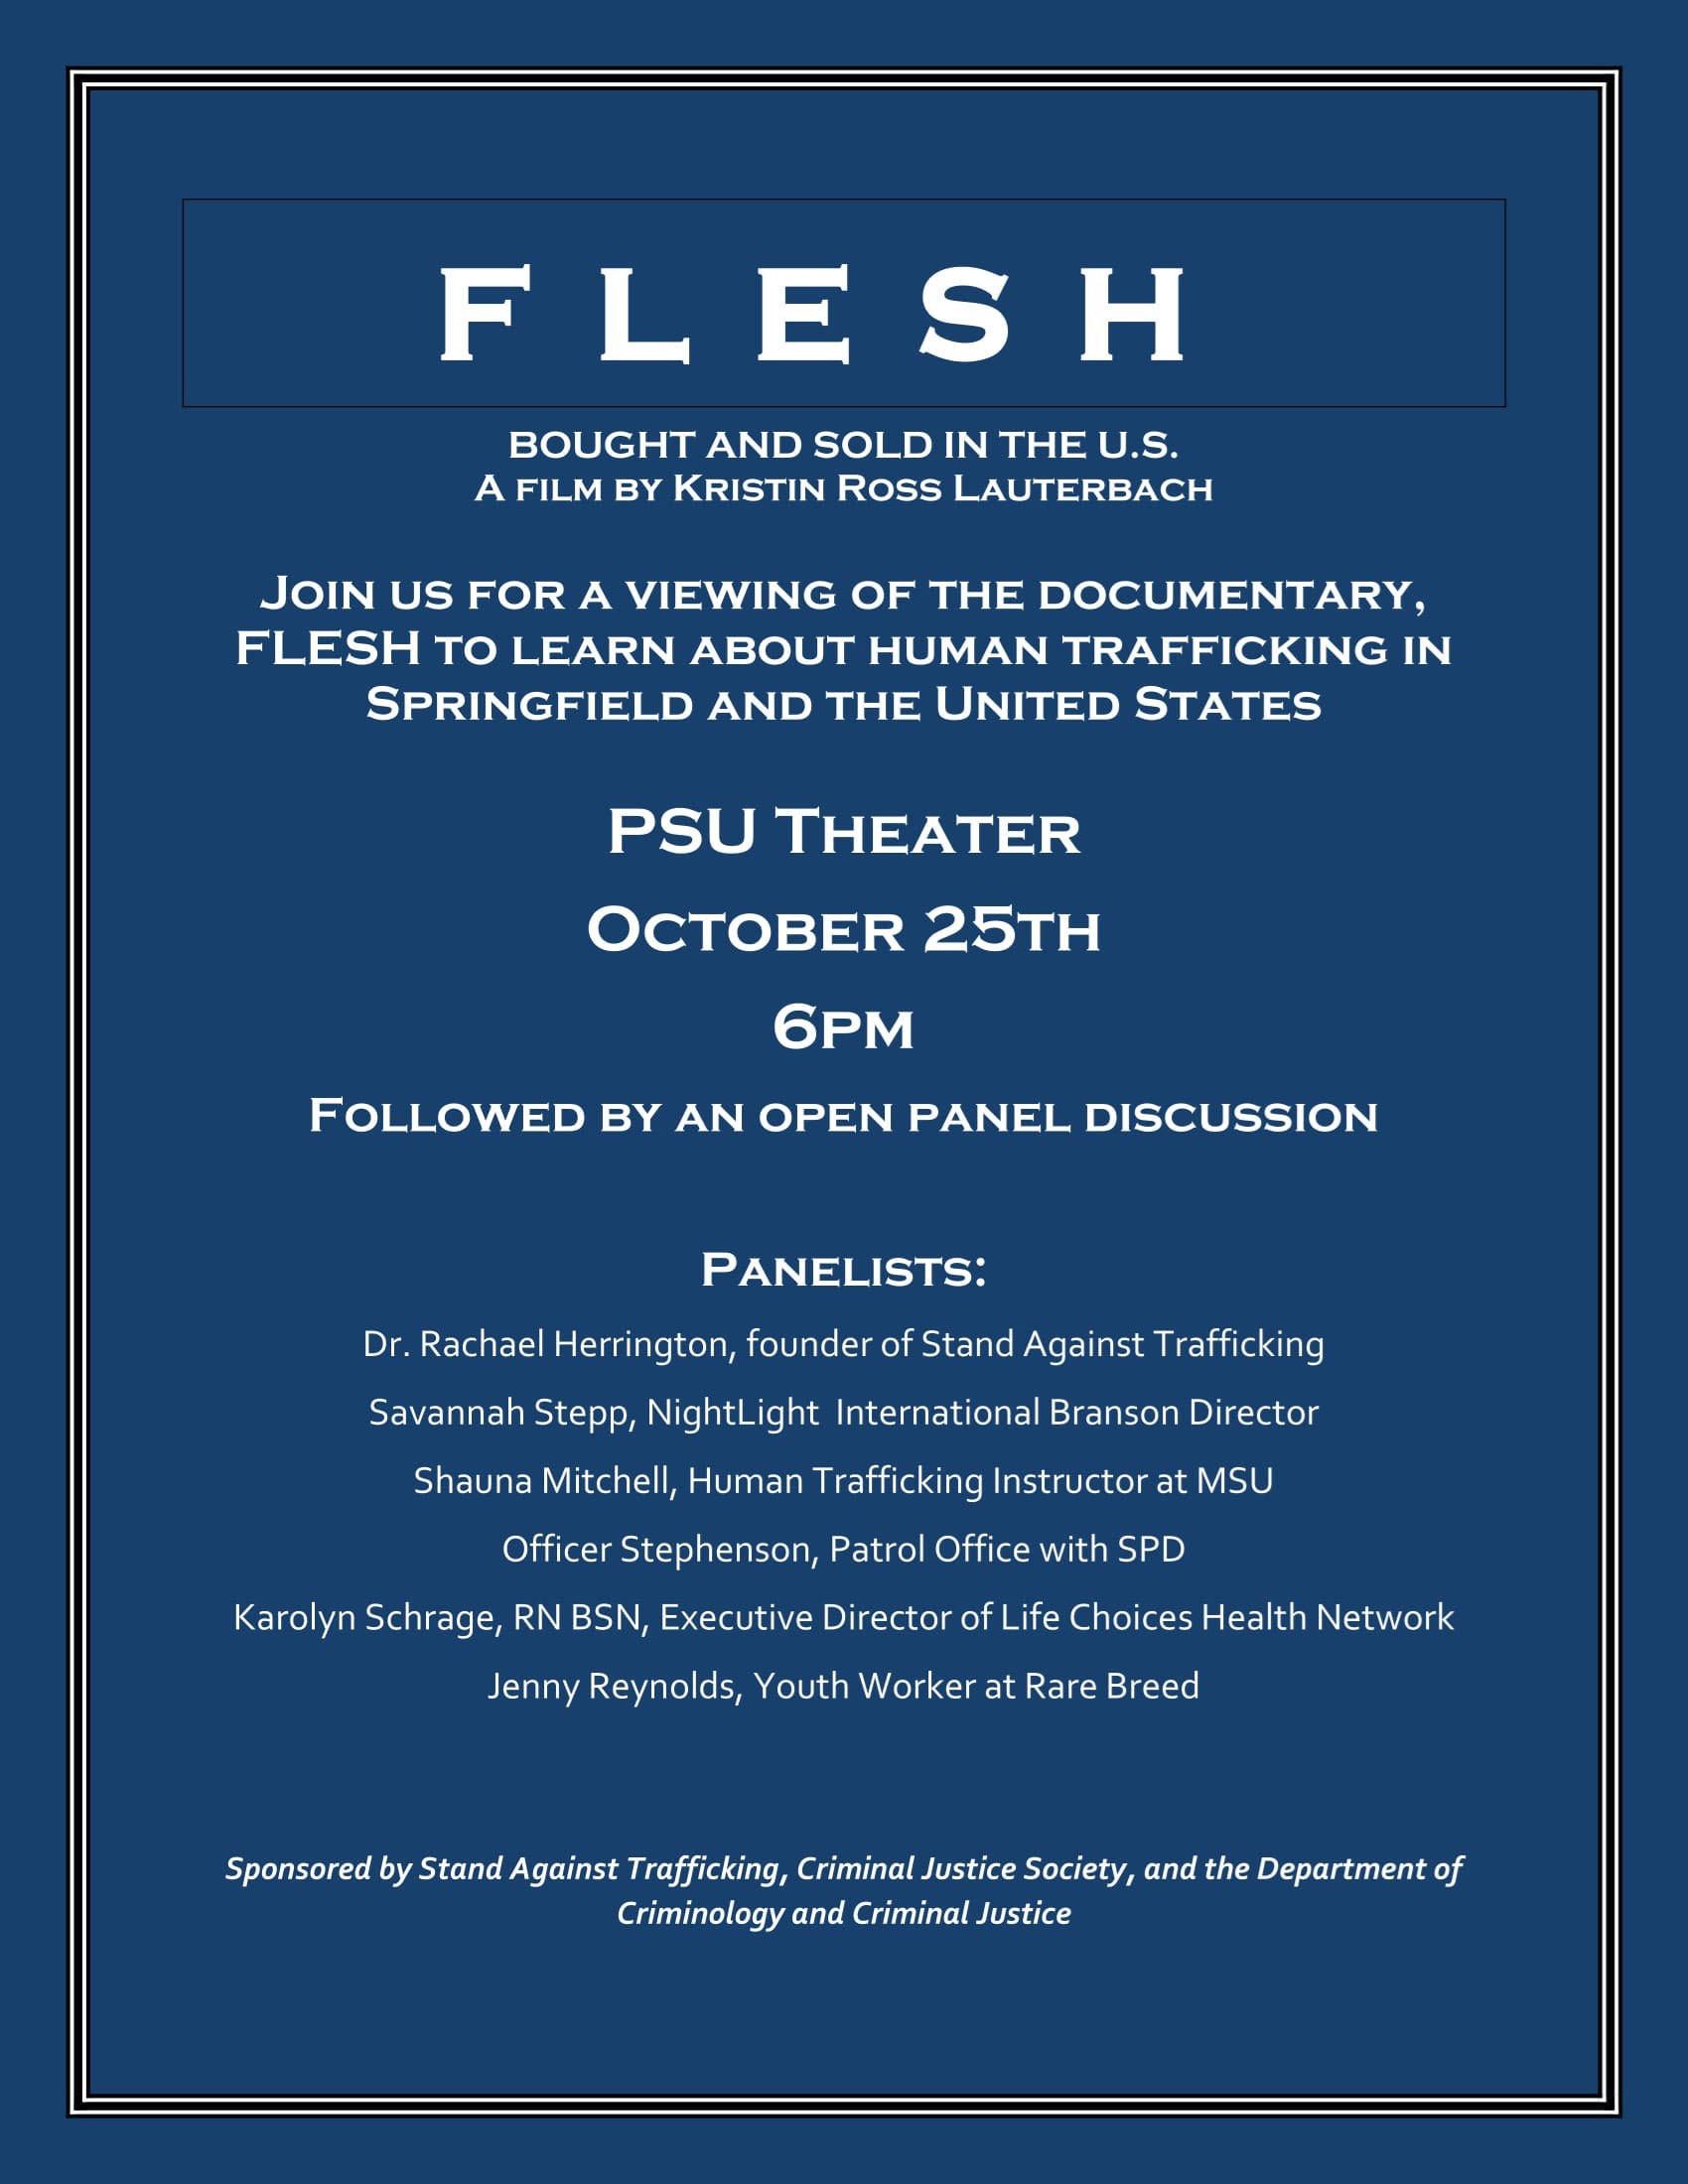 FLESH Documentary Screening